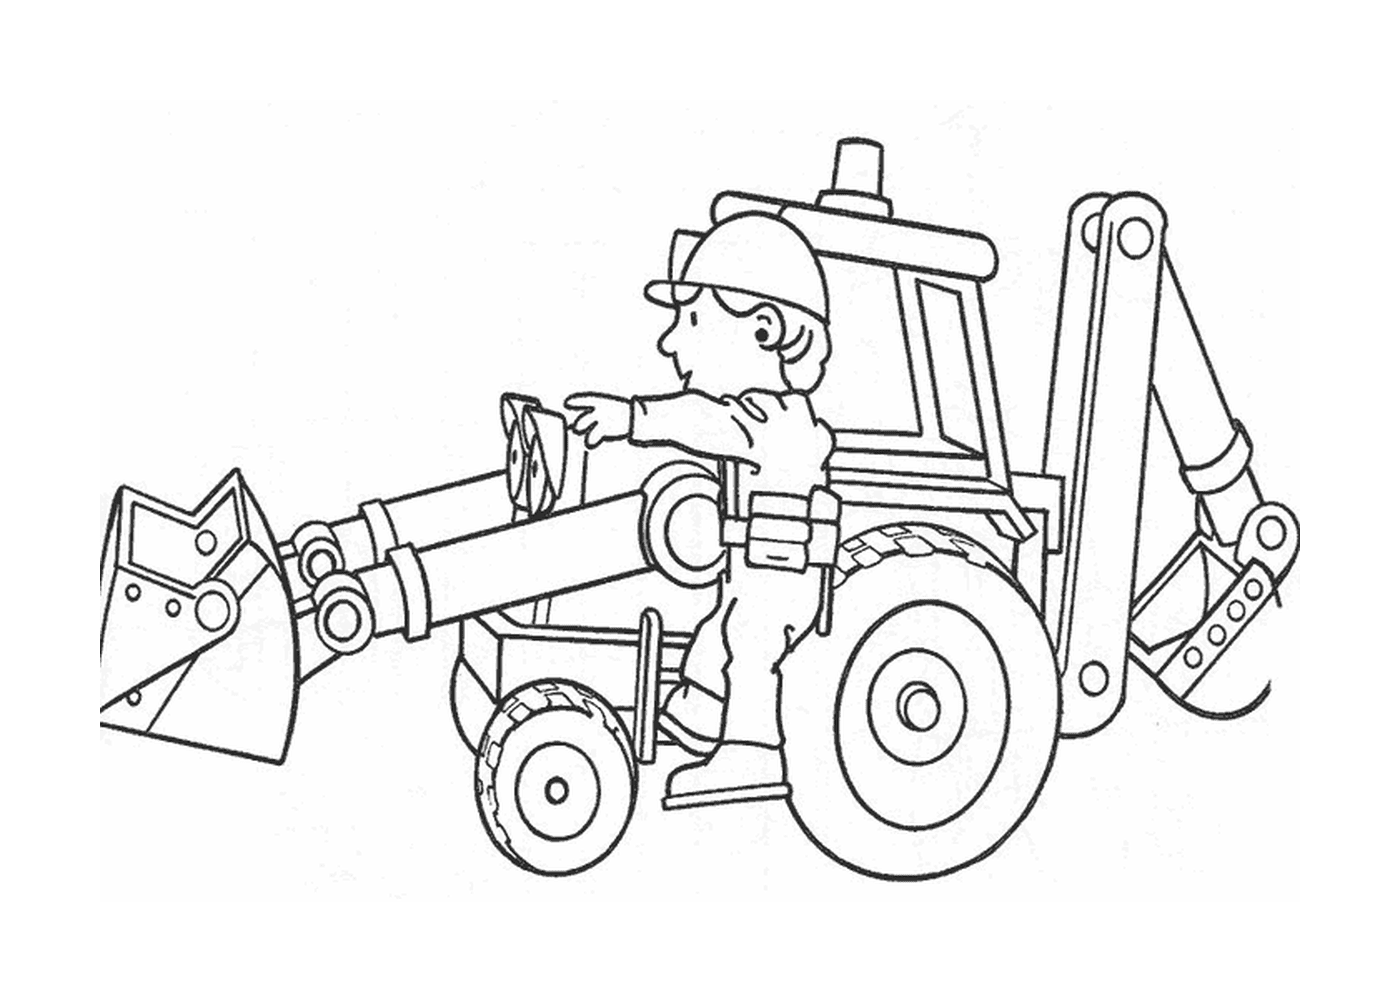   Un homme assis sur un tracteur 